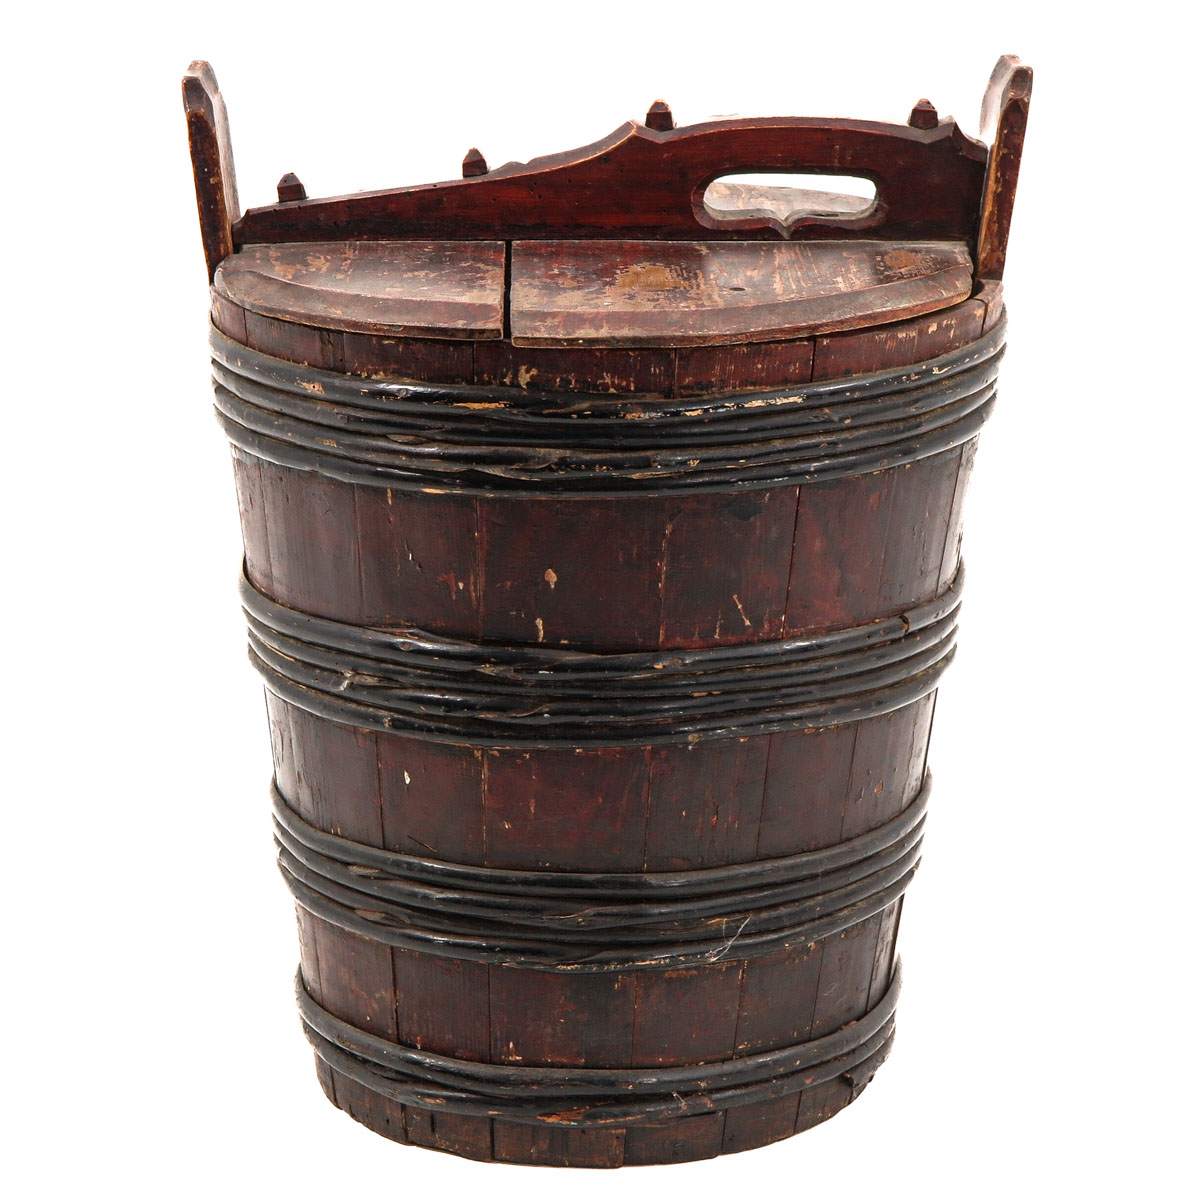 An 18th Century Butter Barrel